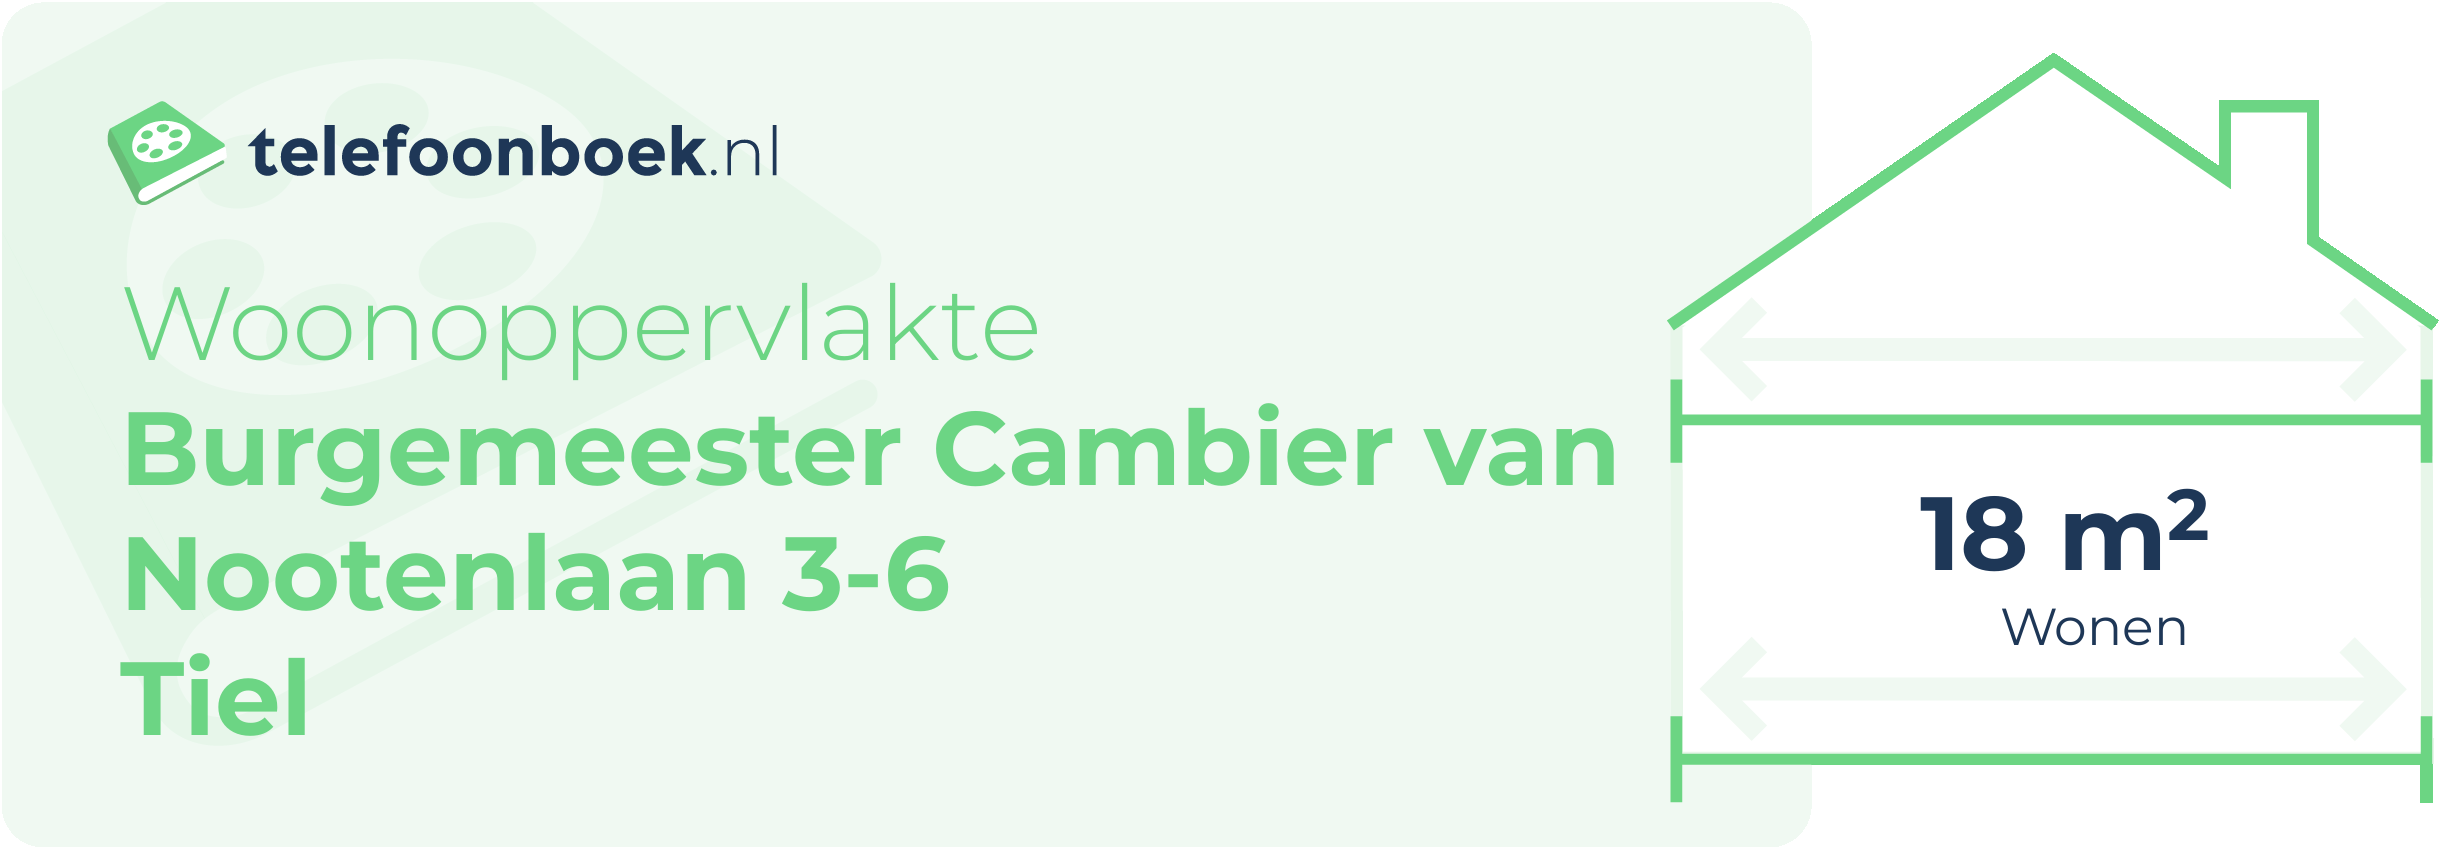 Woonoppervlakte Burgemeester Cambier Van Nootenlaan 3-6 Tiel